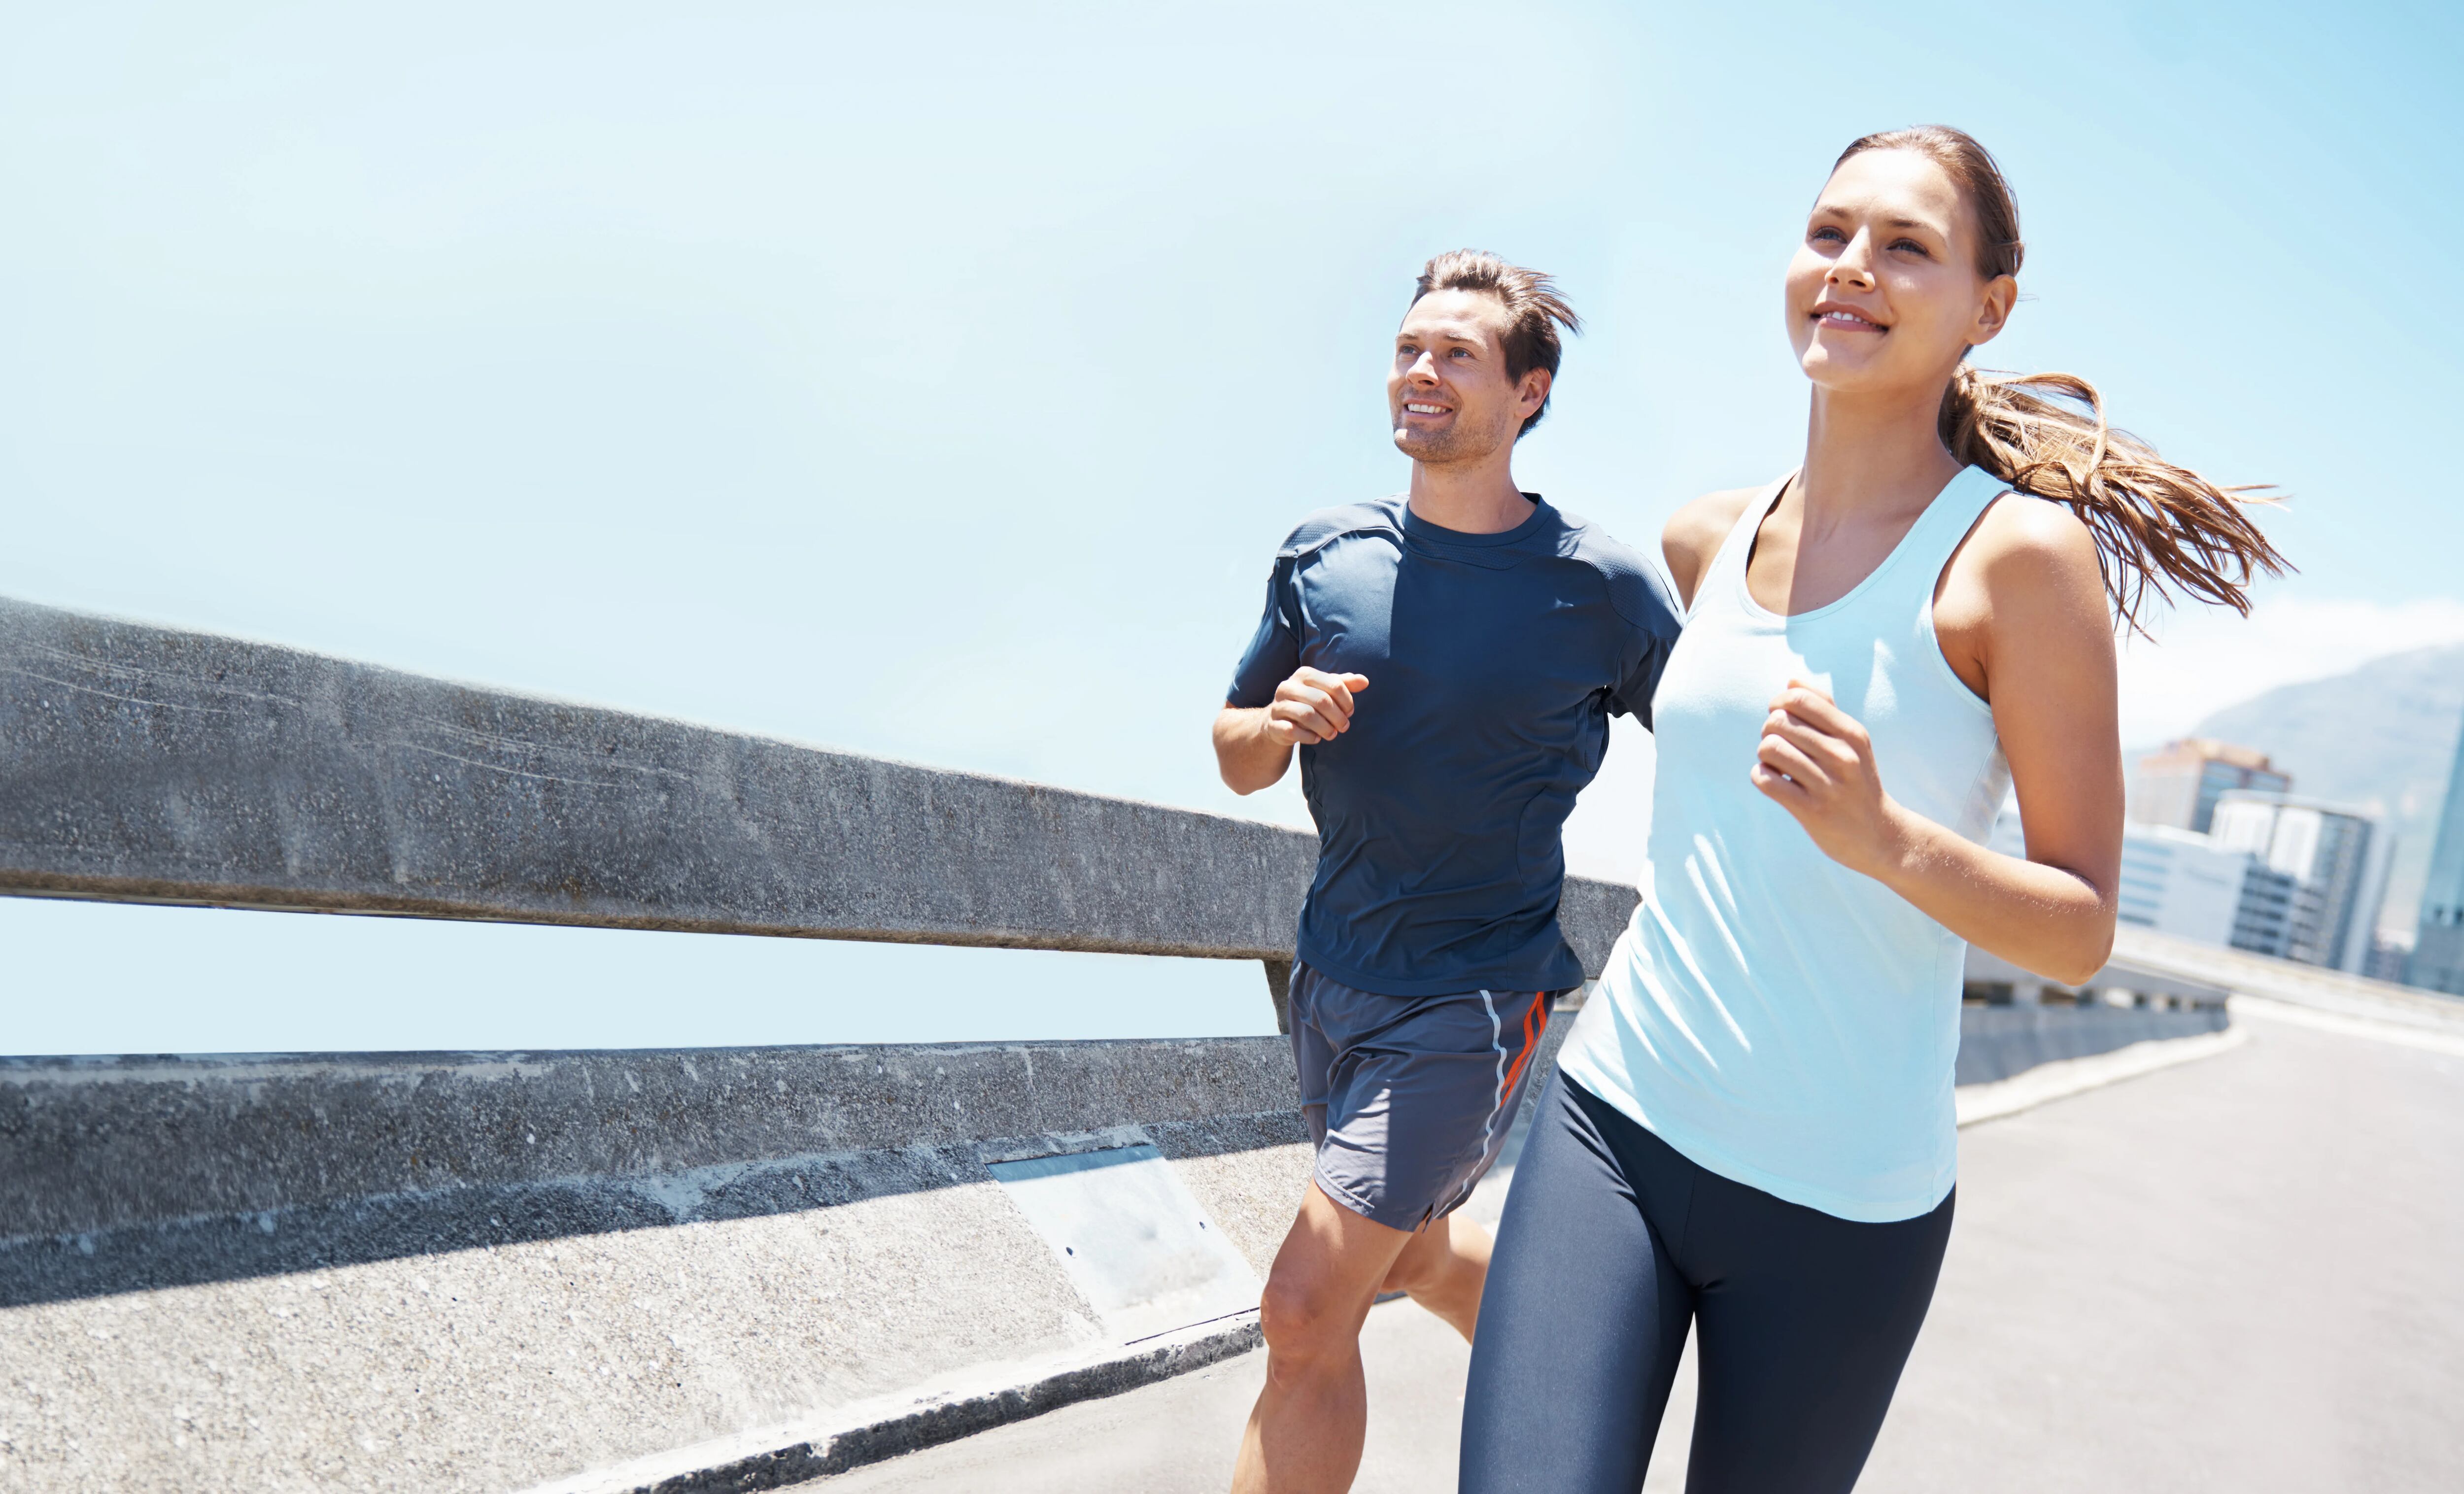 Los ejercicios aeróbicos, como el running o una buena caminata, generan neurotransmisores que impulsan un buen estado de ánimo